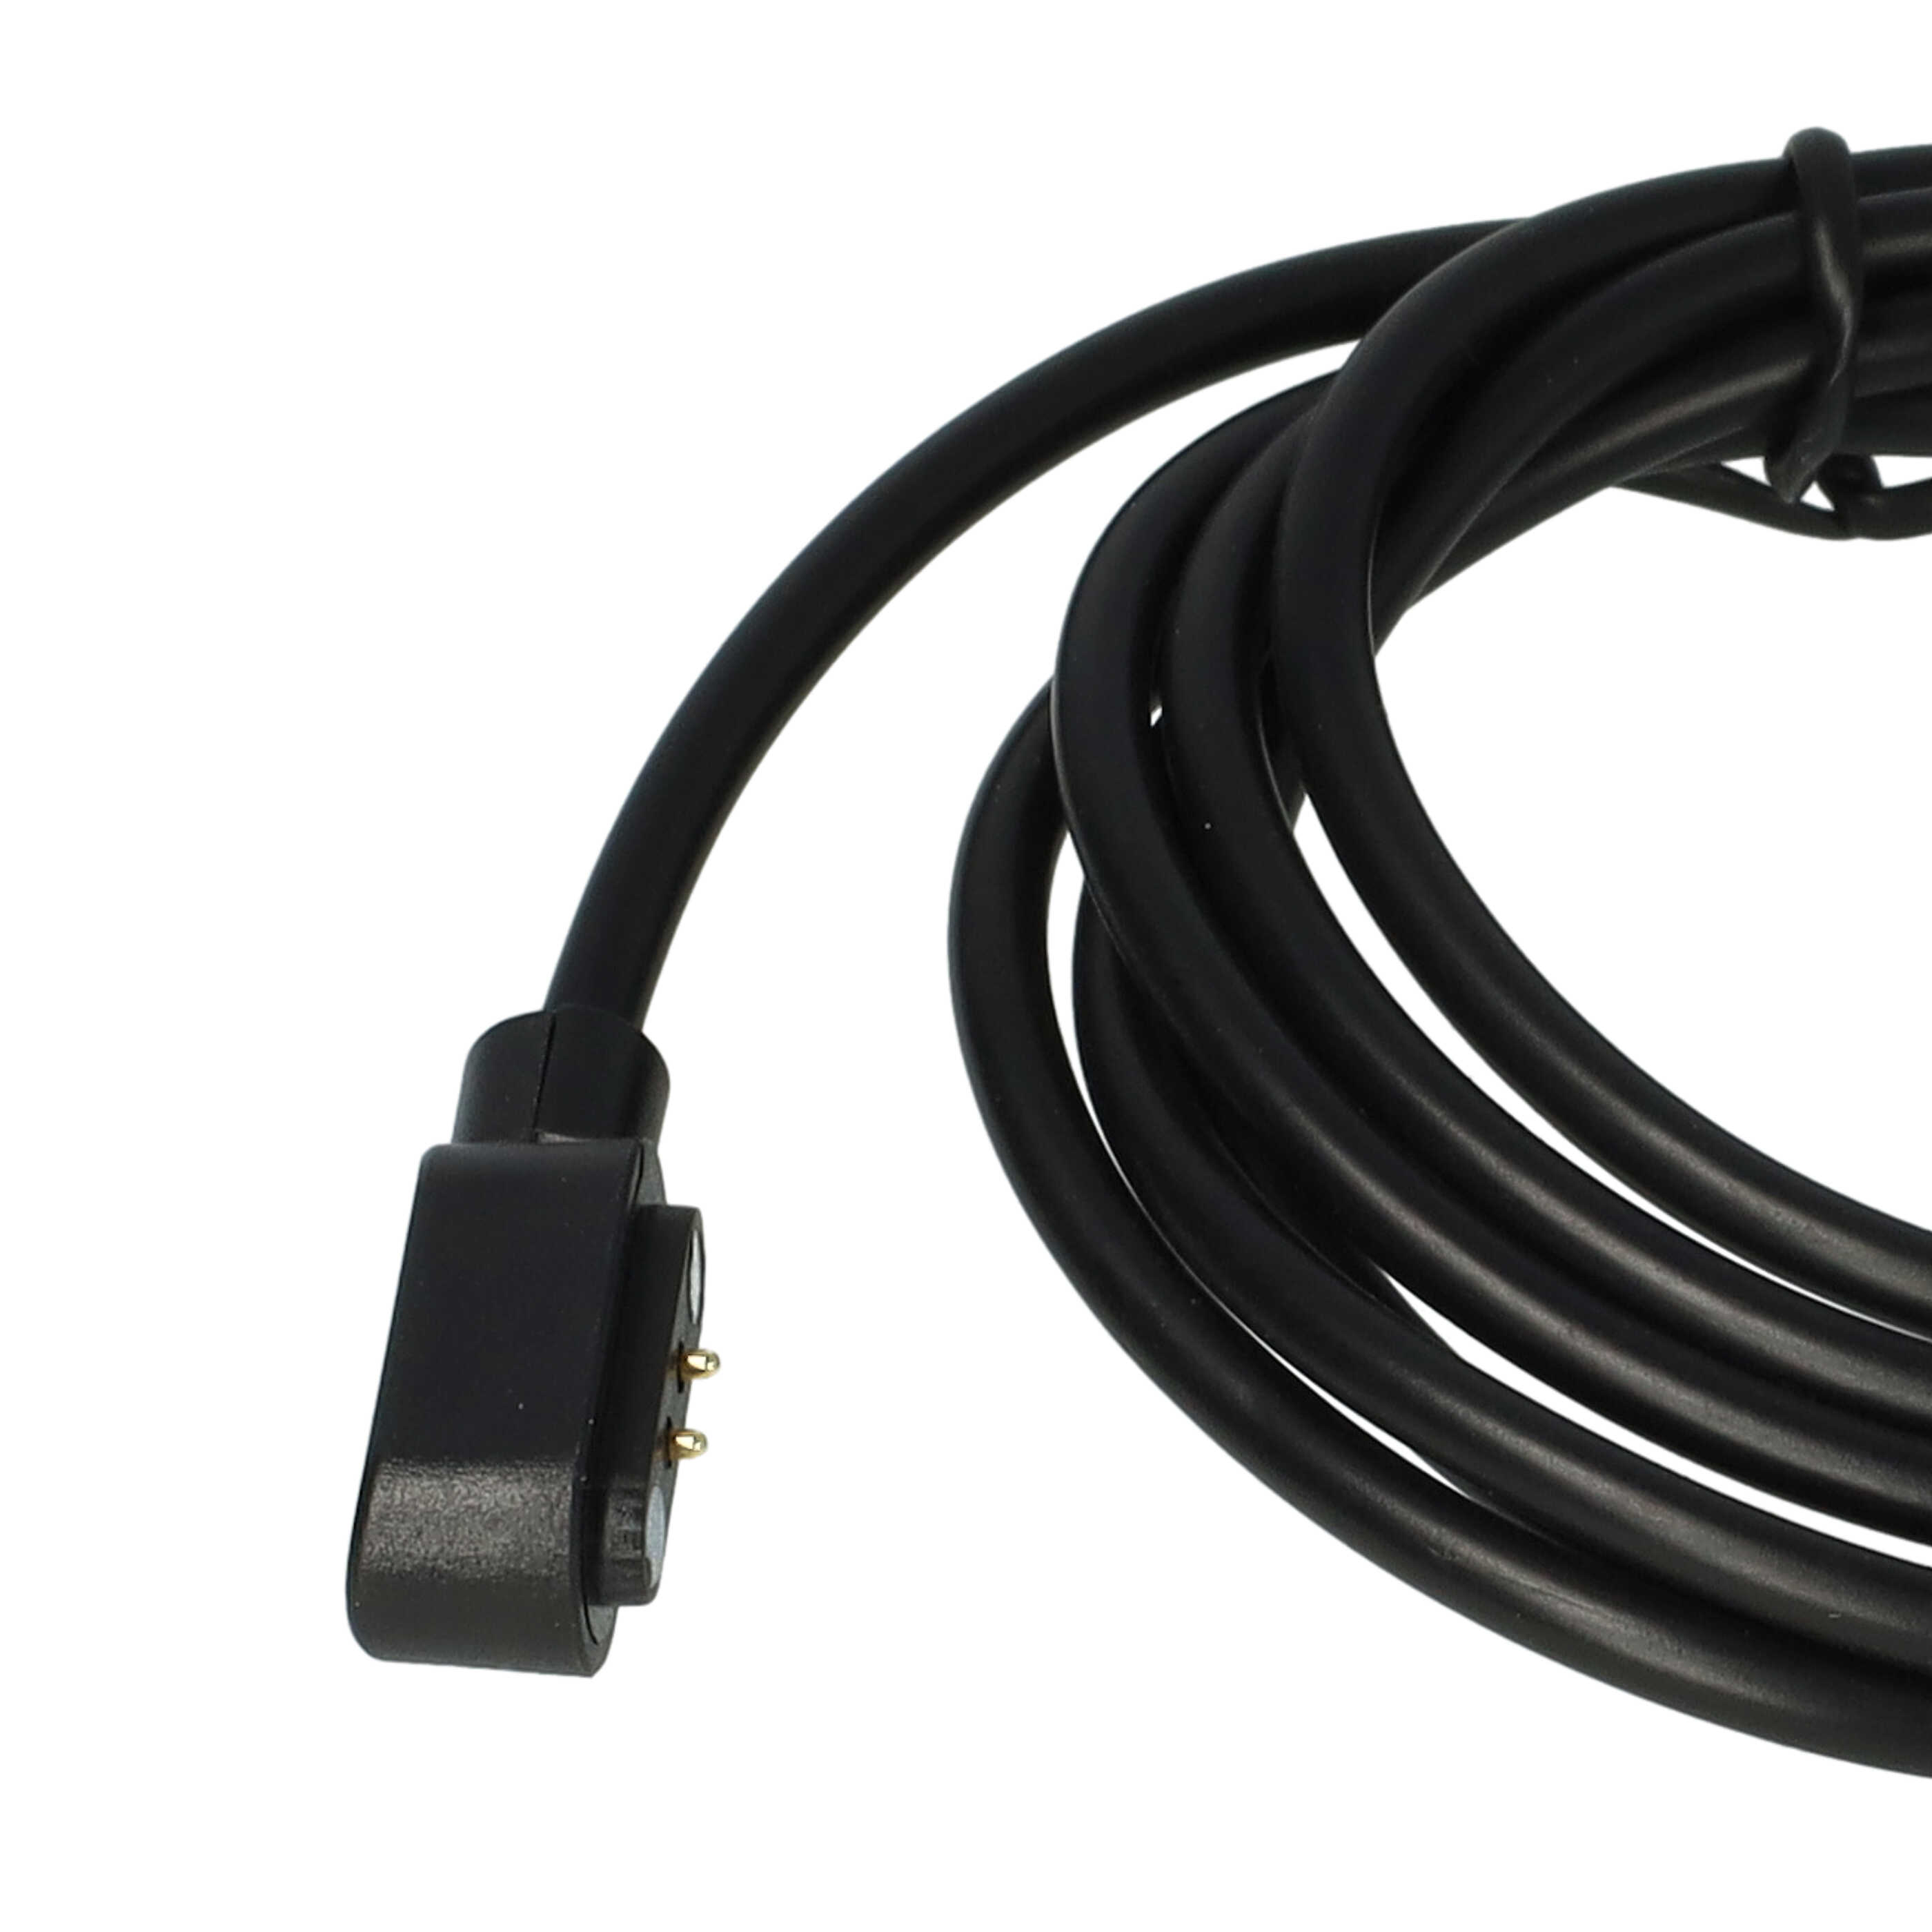 Kabel do ładowania smartwatch Mobvoi TicWatch GTH - Kabel USB A, 120 cm, czarny